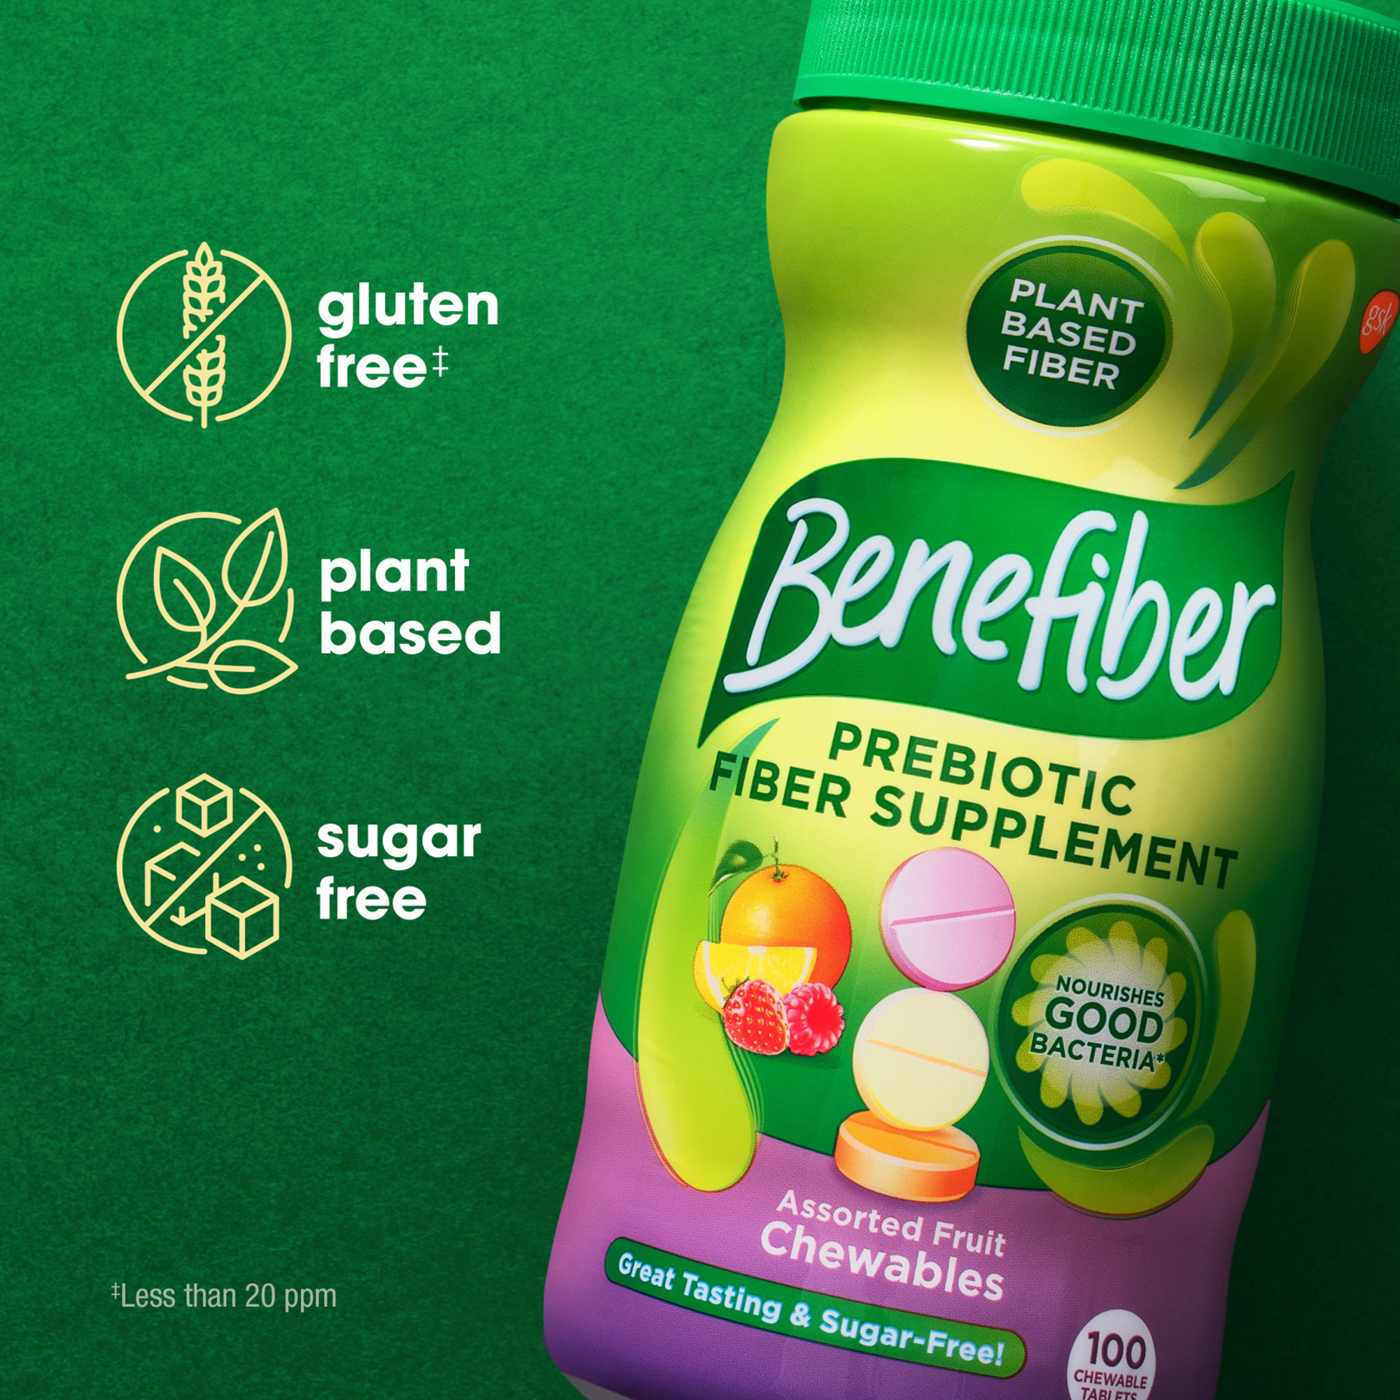 Benefiber Prebiotic Fiber Supplement Chewable Assorted Fruit; image 9 of 9